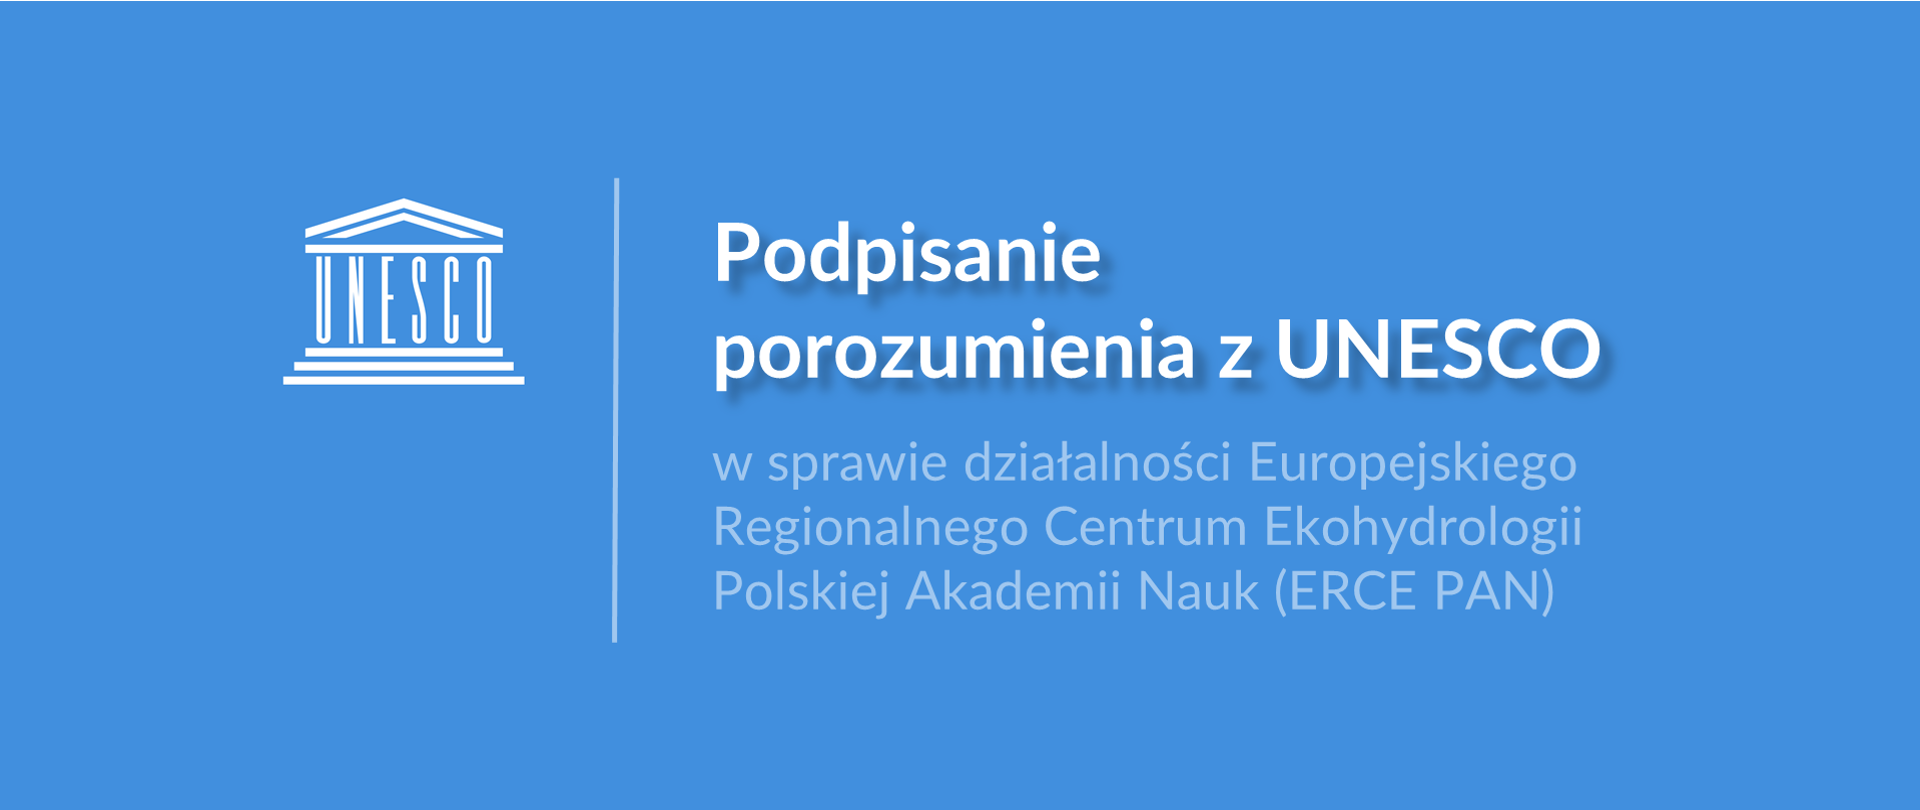 Grafika z logo UNESCO i tekstem: "Podpisanie porozumienia z UNESCO w sprawie działalności Europejskiego Regionalnego Centrum Ekohydrologii Polskiej Akademii Nauk (ERCE PAN)"